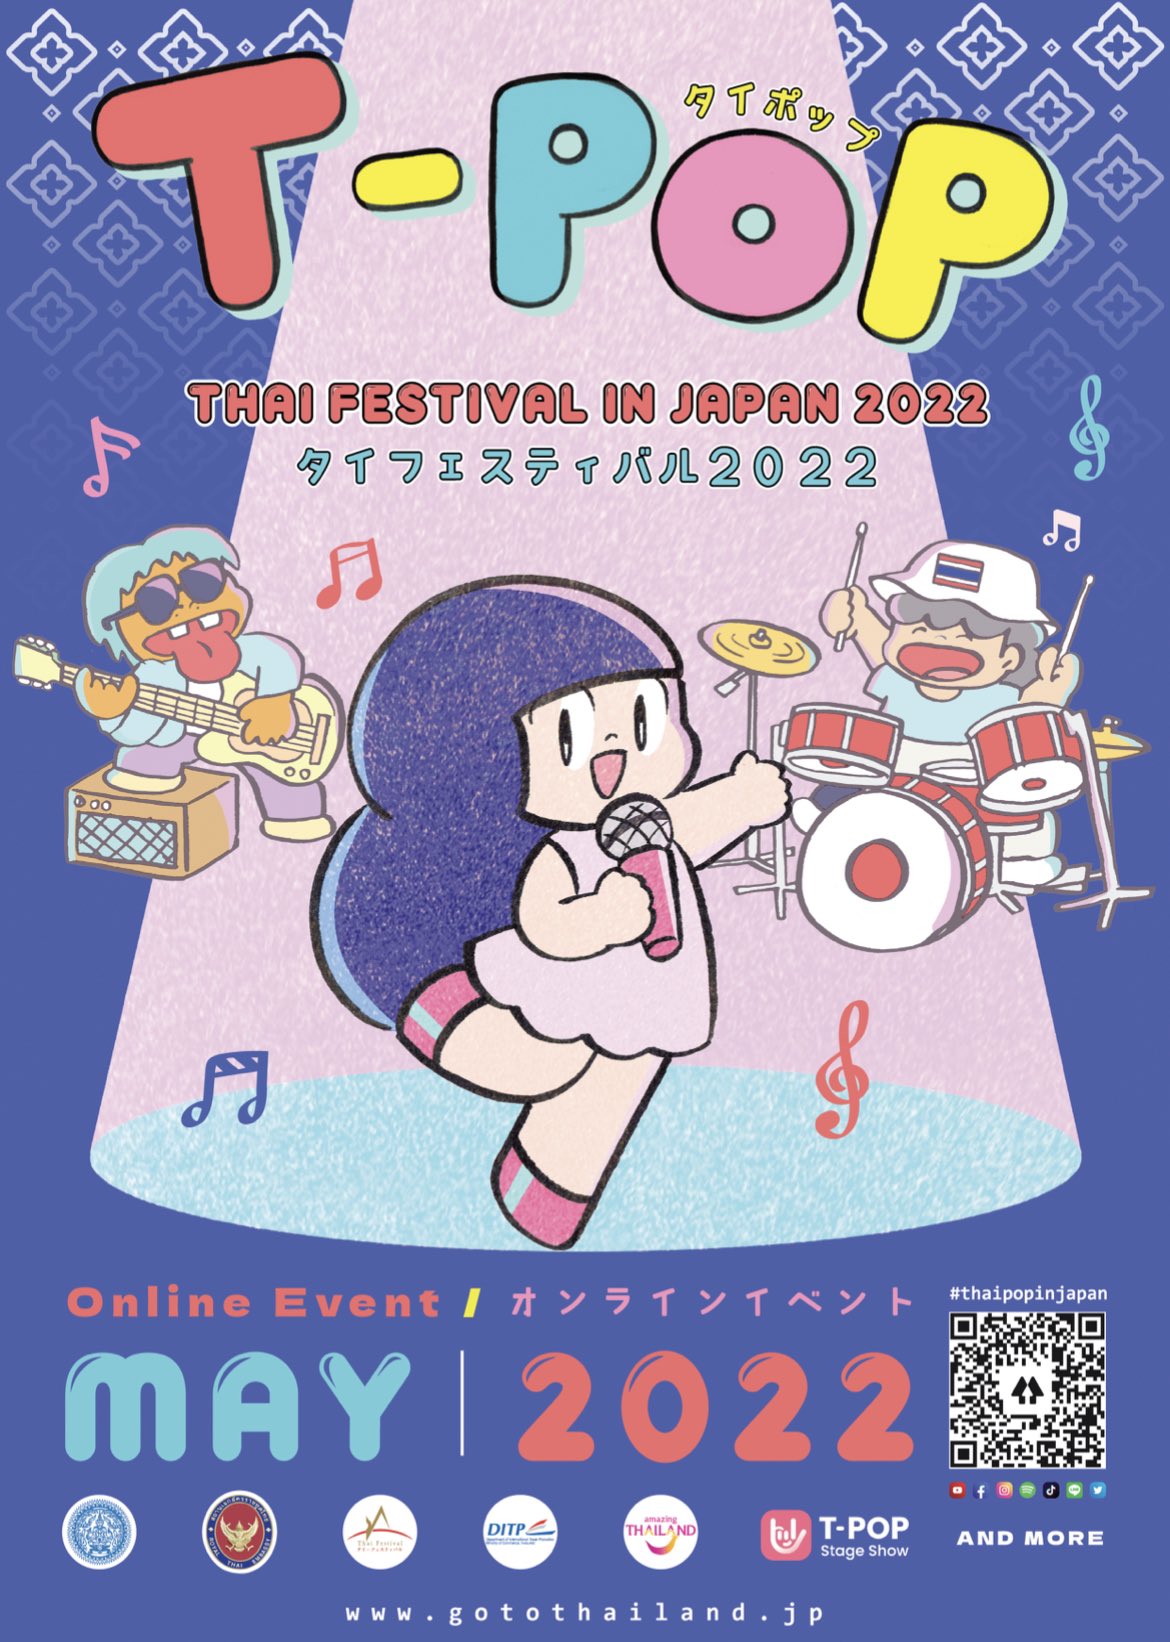 【タイフェス2022】T-Pop Stage Show: Special Episode with Thai Festival in Japan 2022【オンライン】